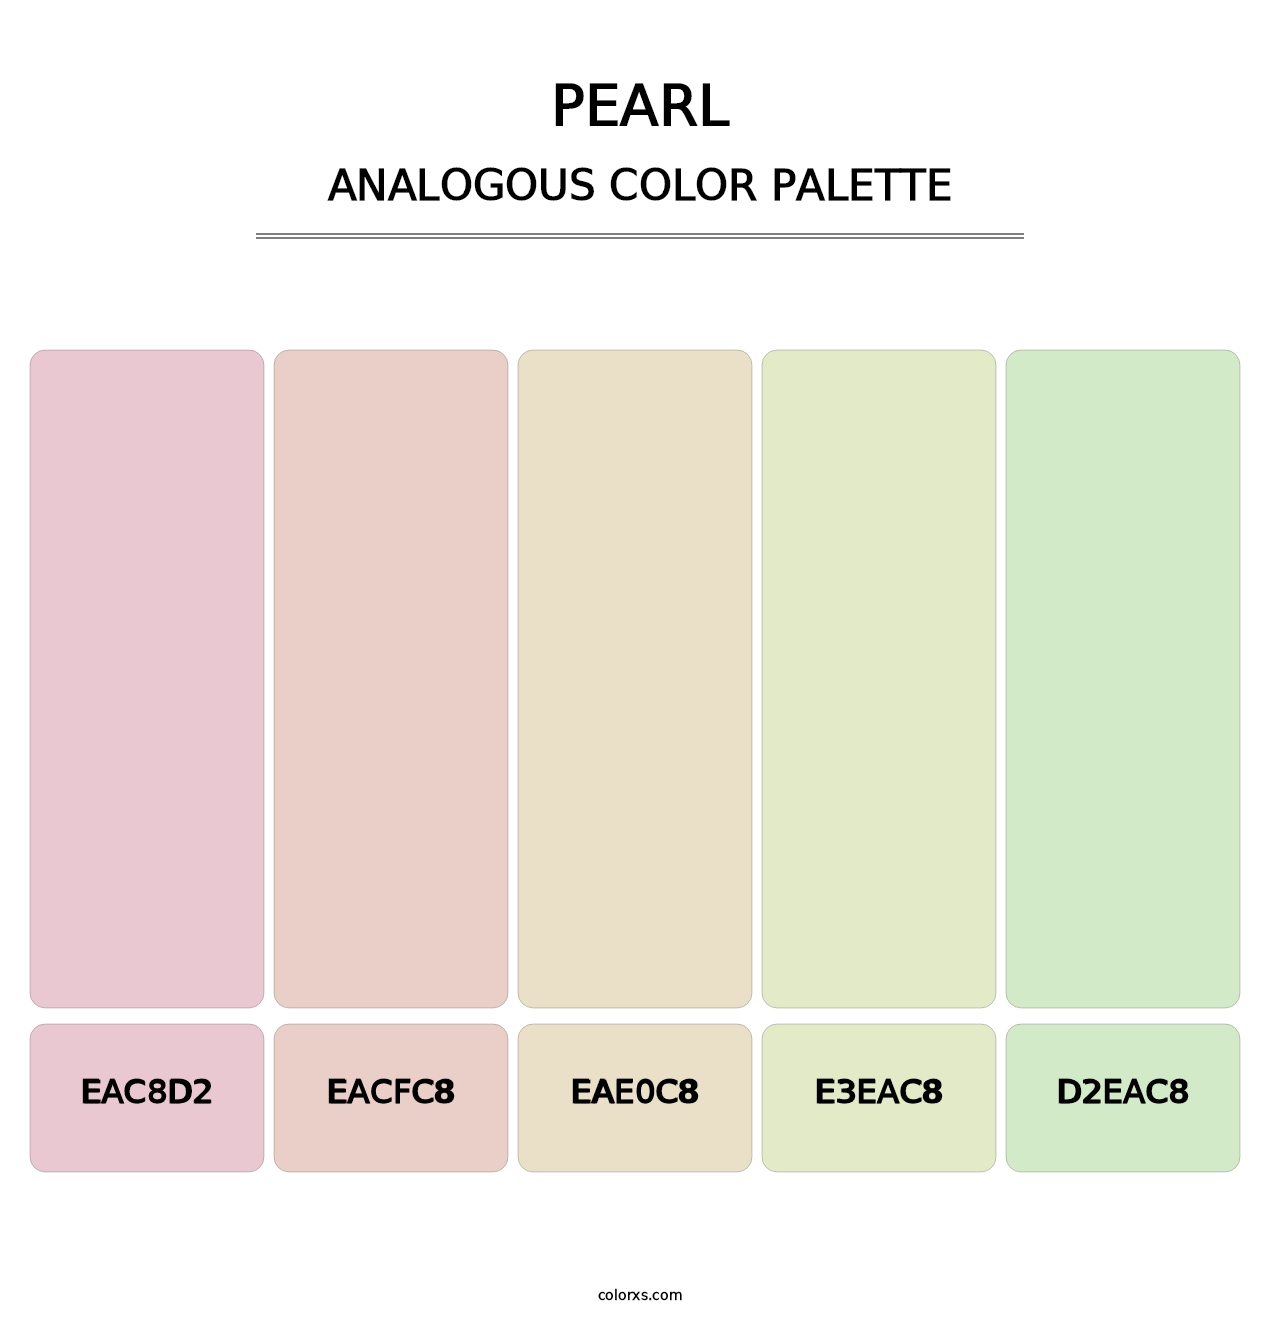 Pearl - Analogous Color Palette